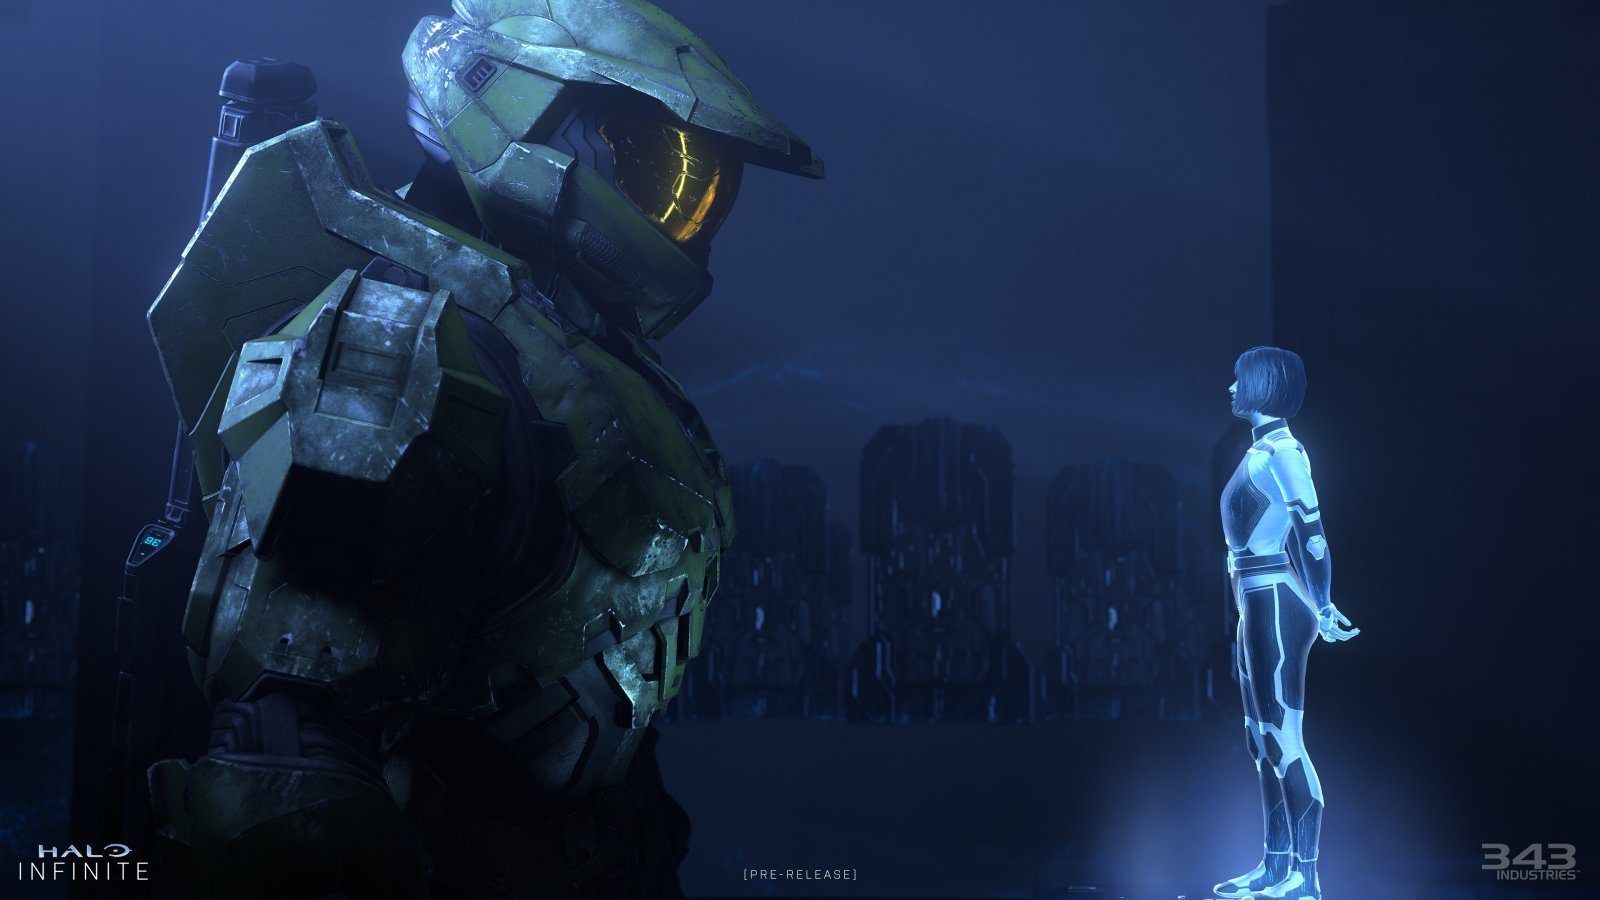 Halo Infinite: 343 Industries ammette che manca la qualità, ma ci sono segni di miglioramento